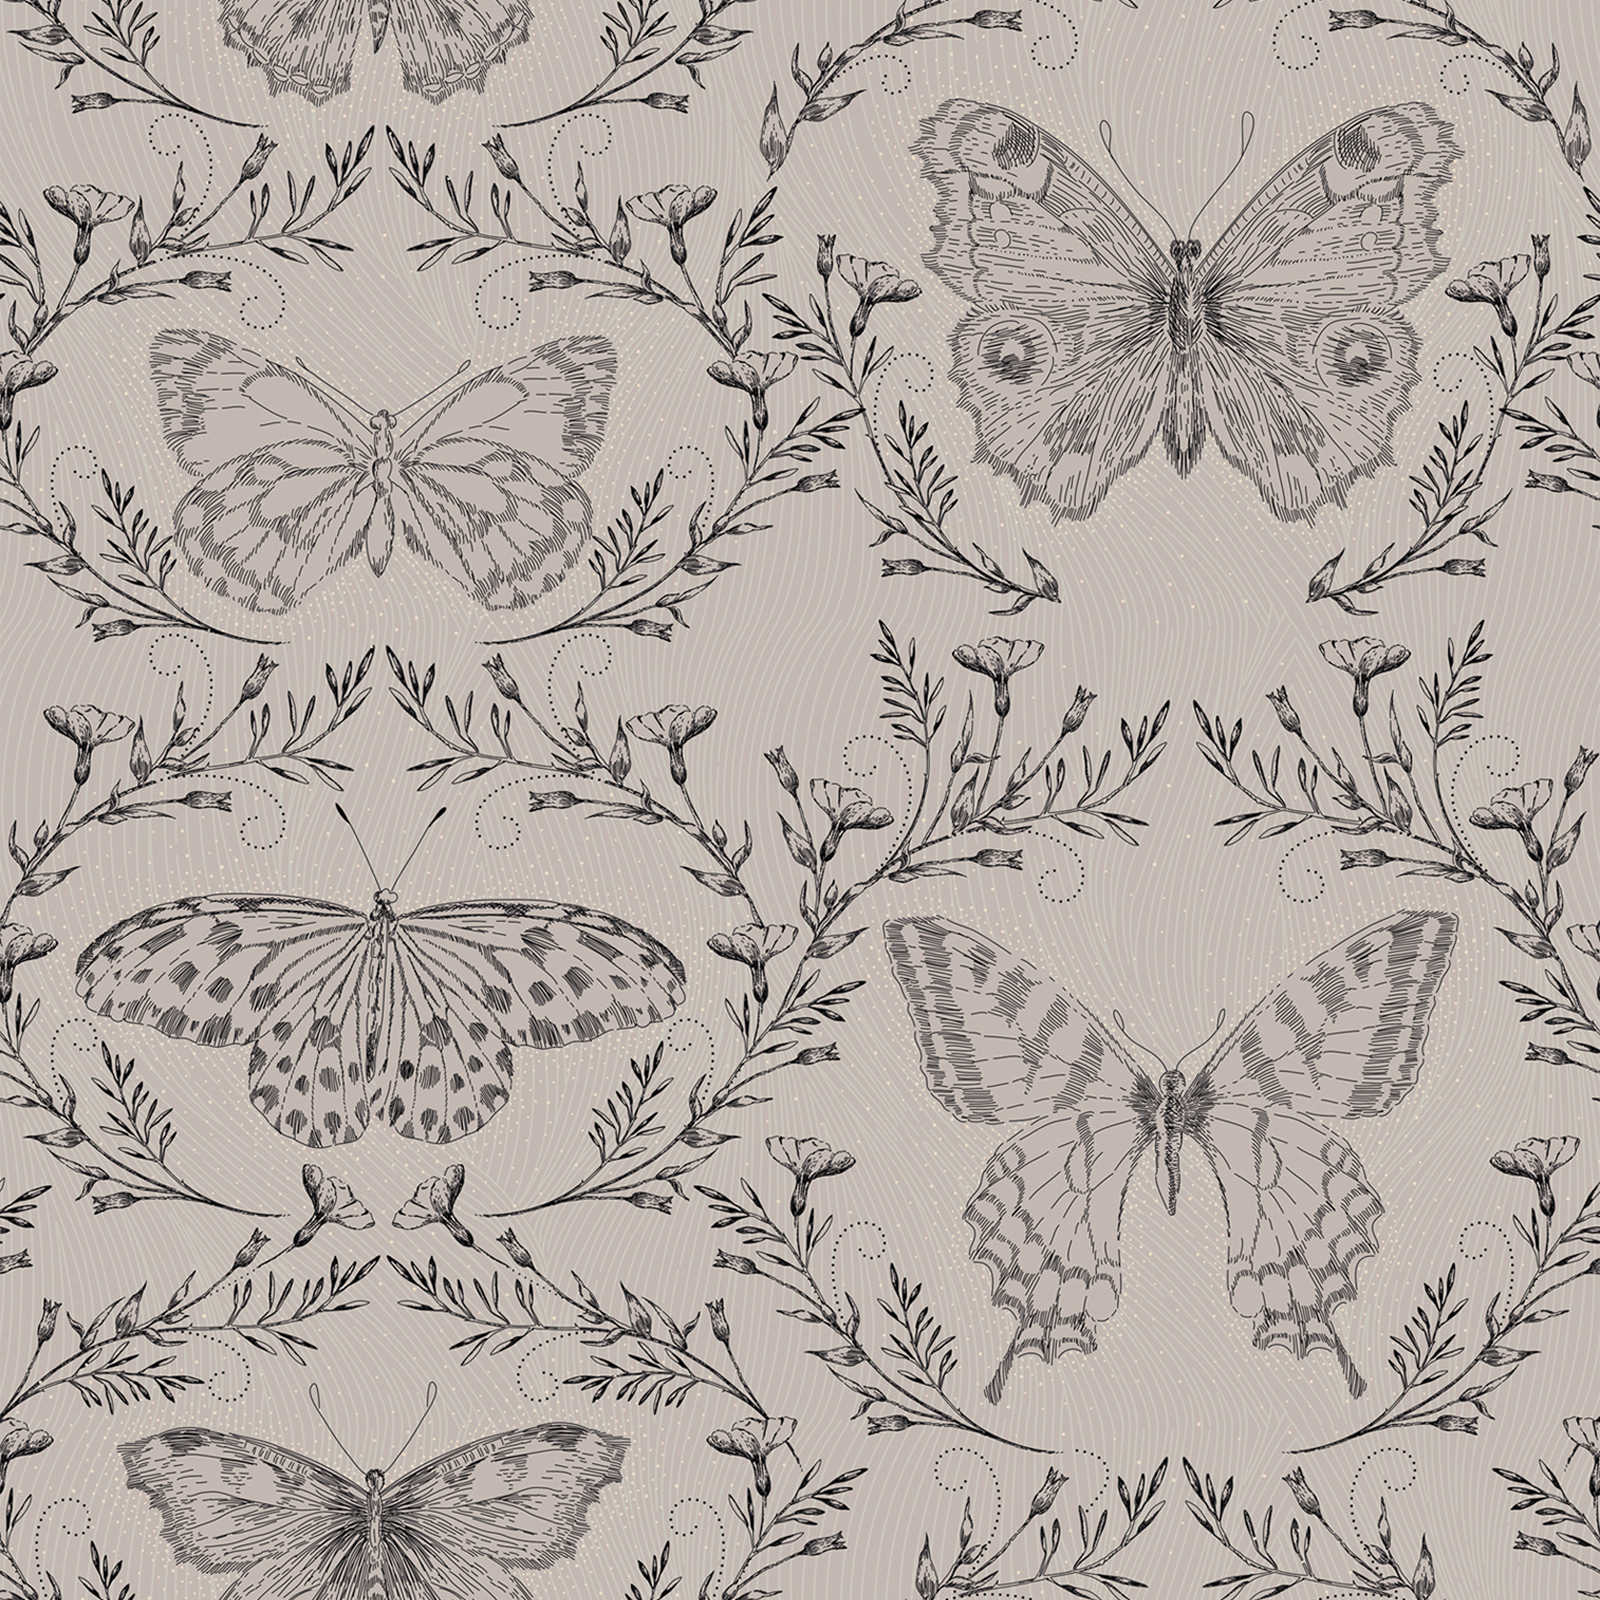             Schmetterlings Tapete mit Ranken im dunklen Design – Grau, Greige, Schwarz
        